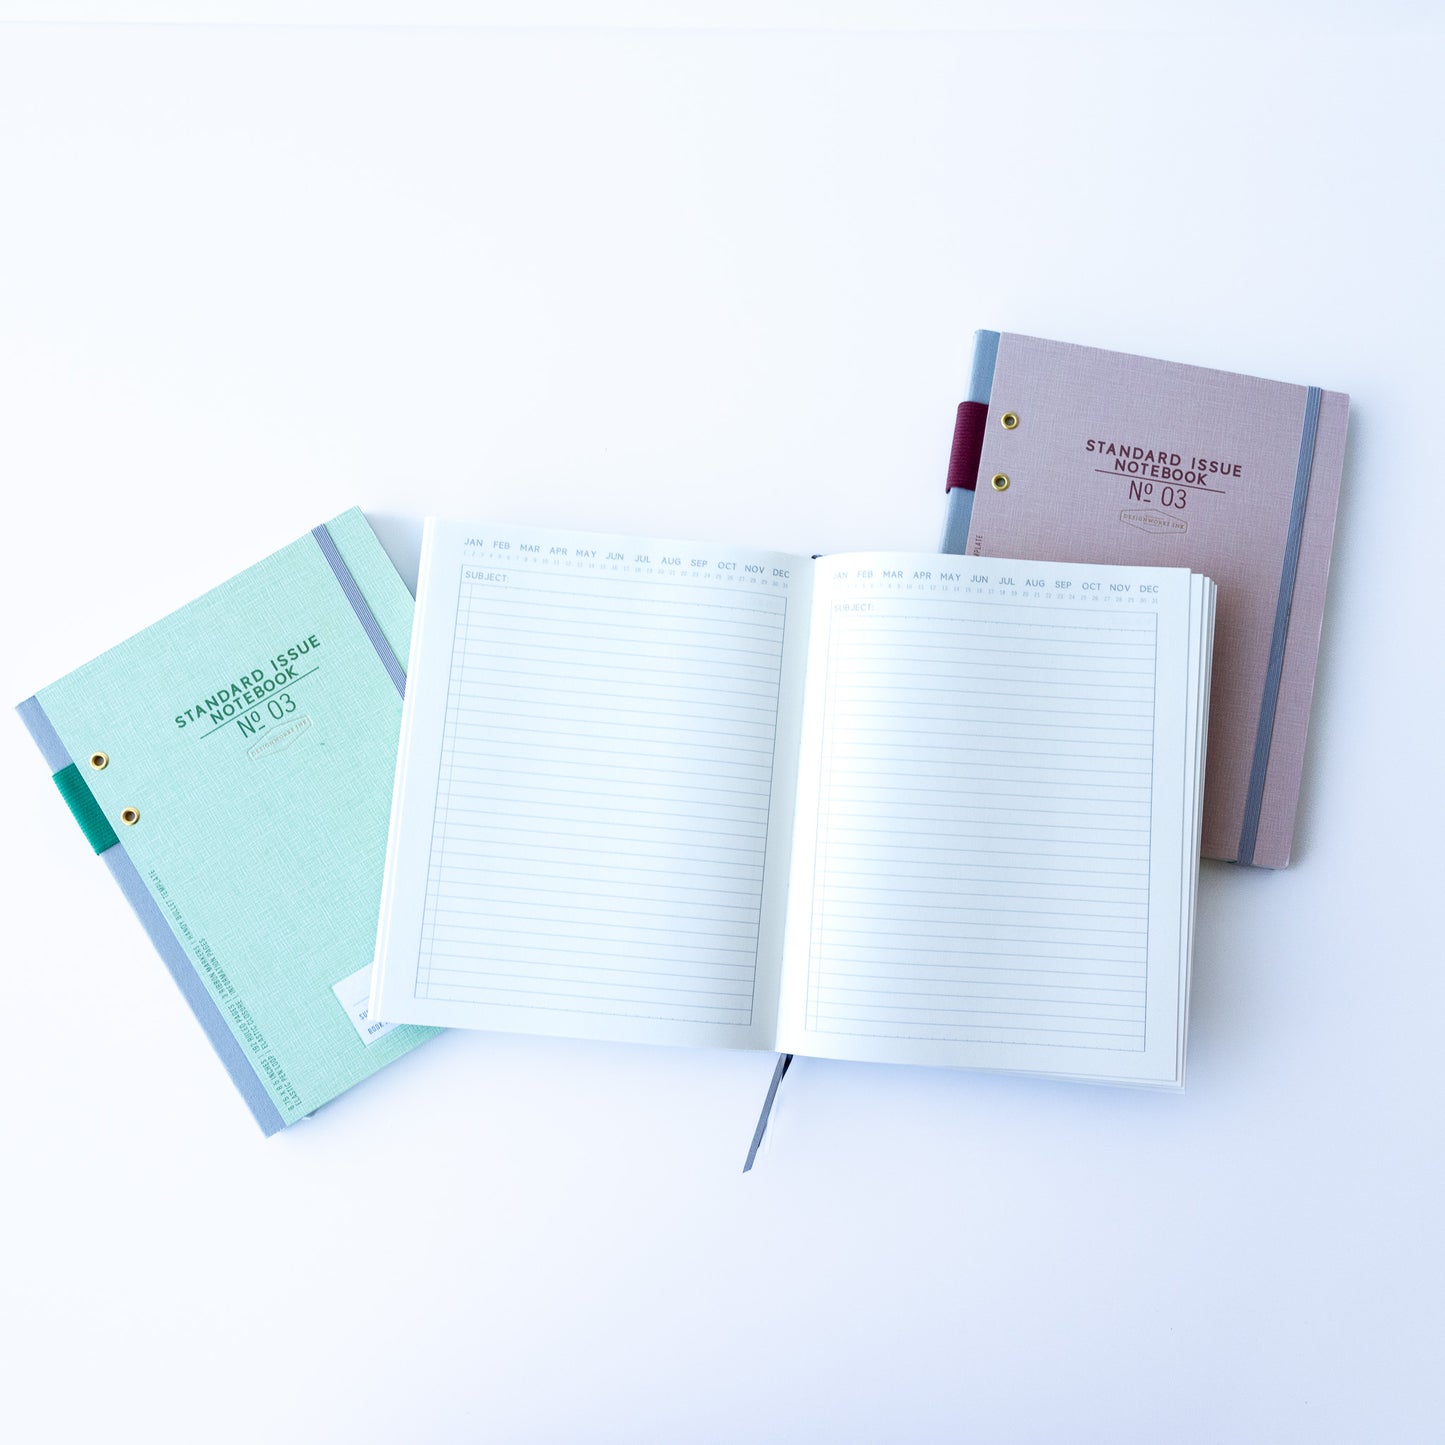 Standard Issue Notebook Planner